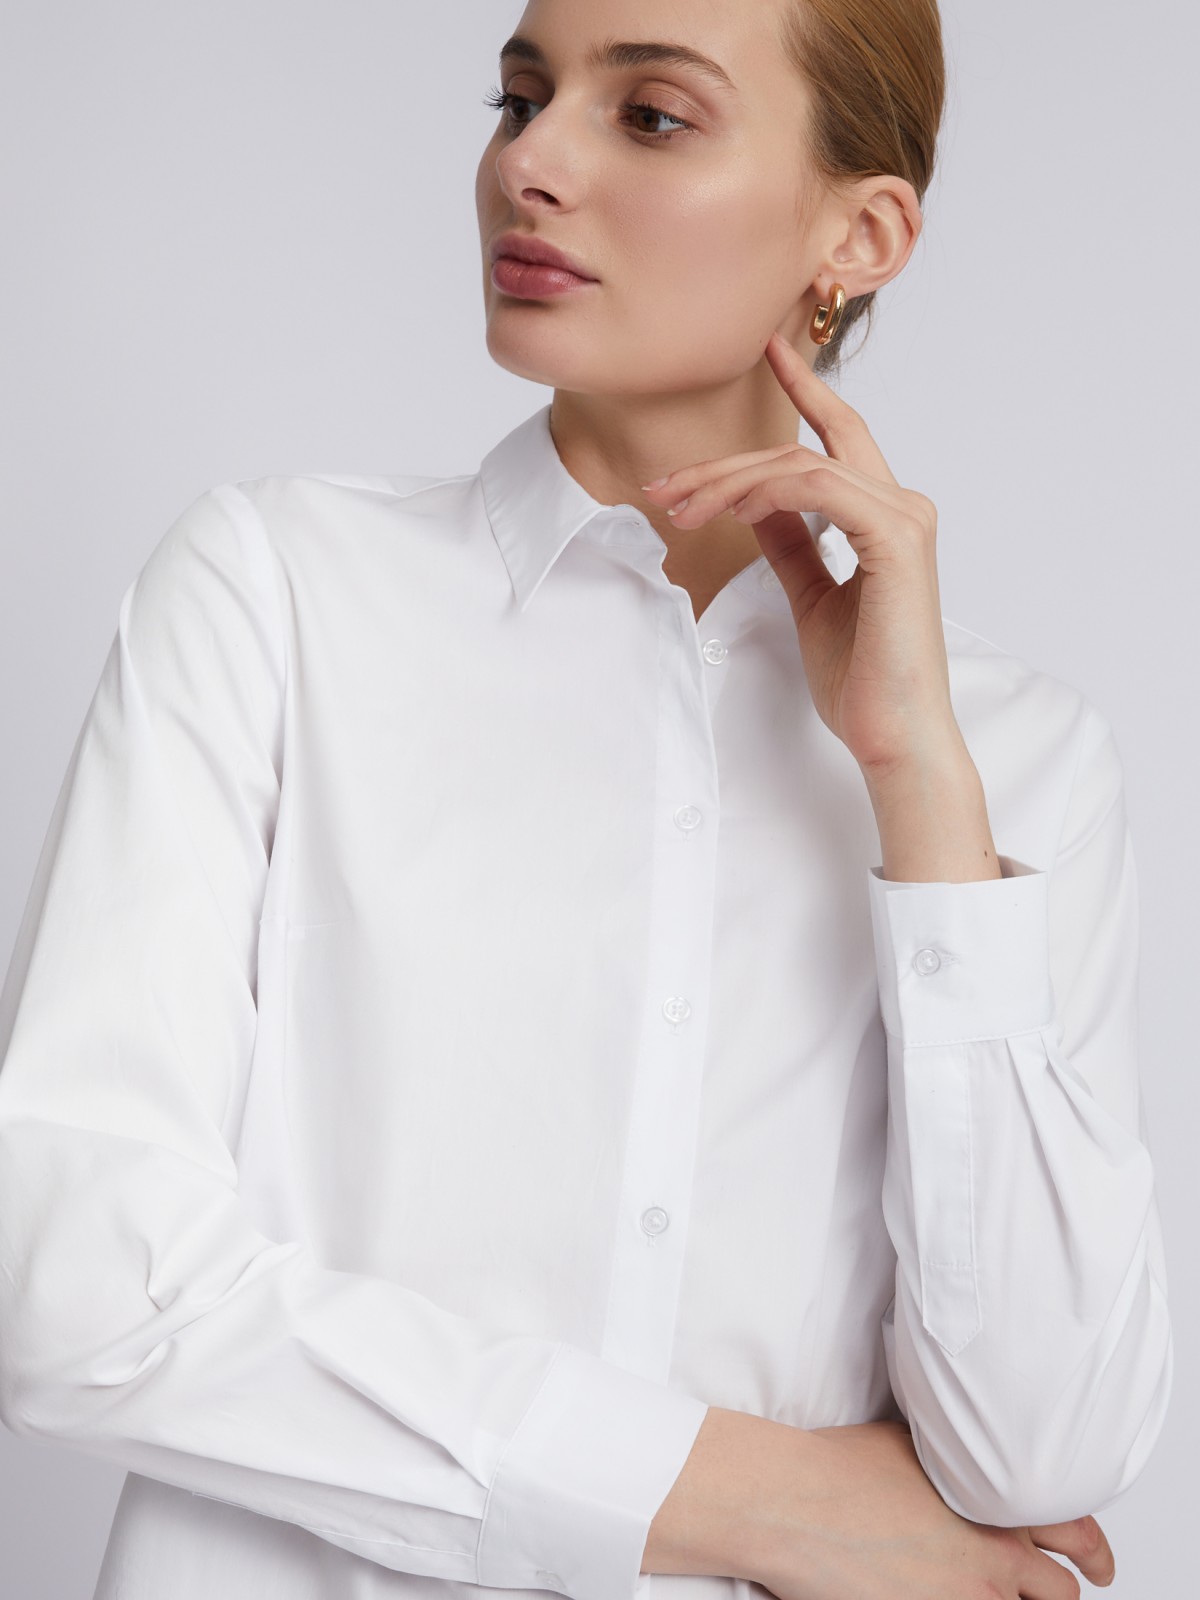 Офисная рубашка с длинным рукавом zolla 023311159152, цвет белый, размер XS - фото 4